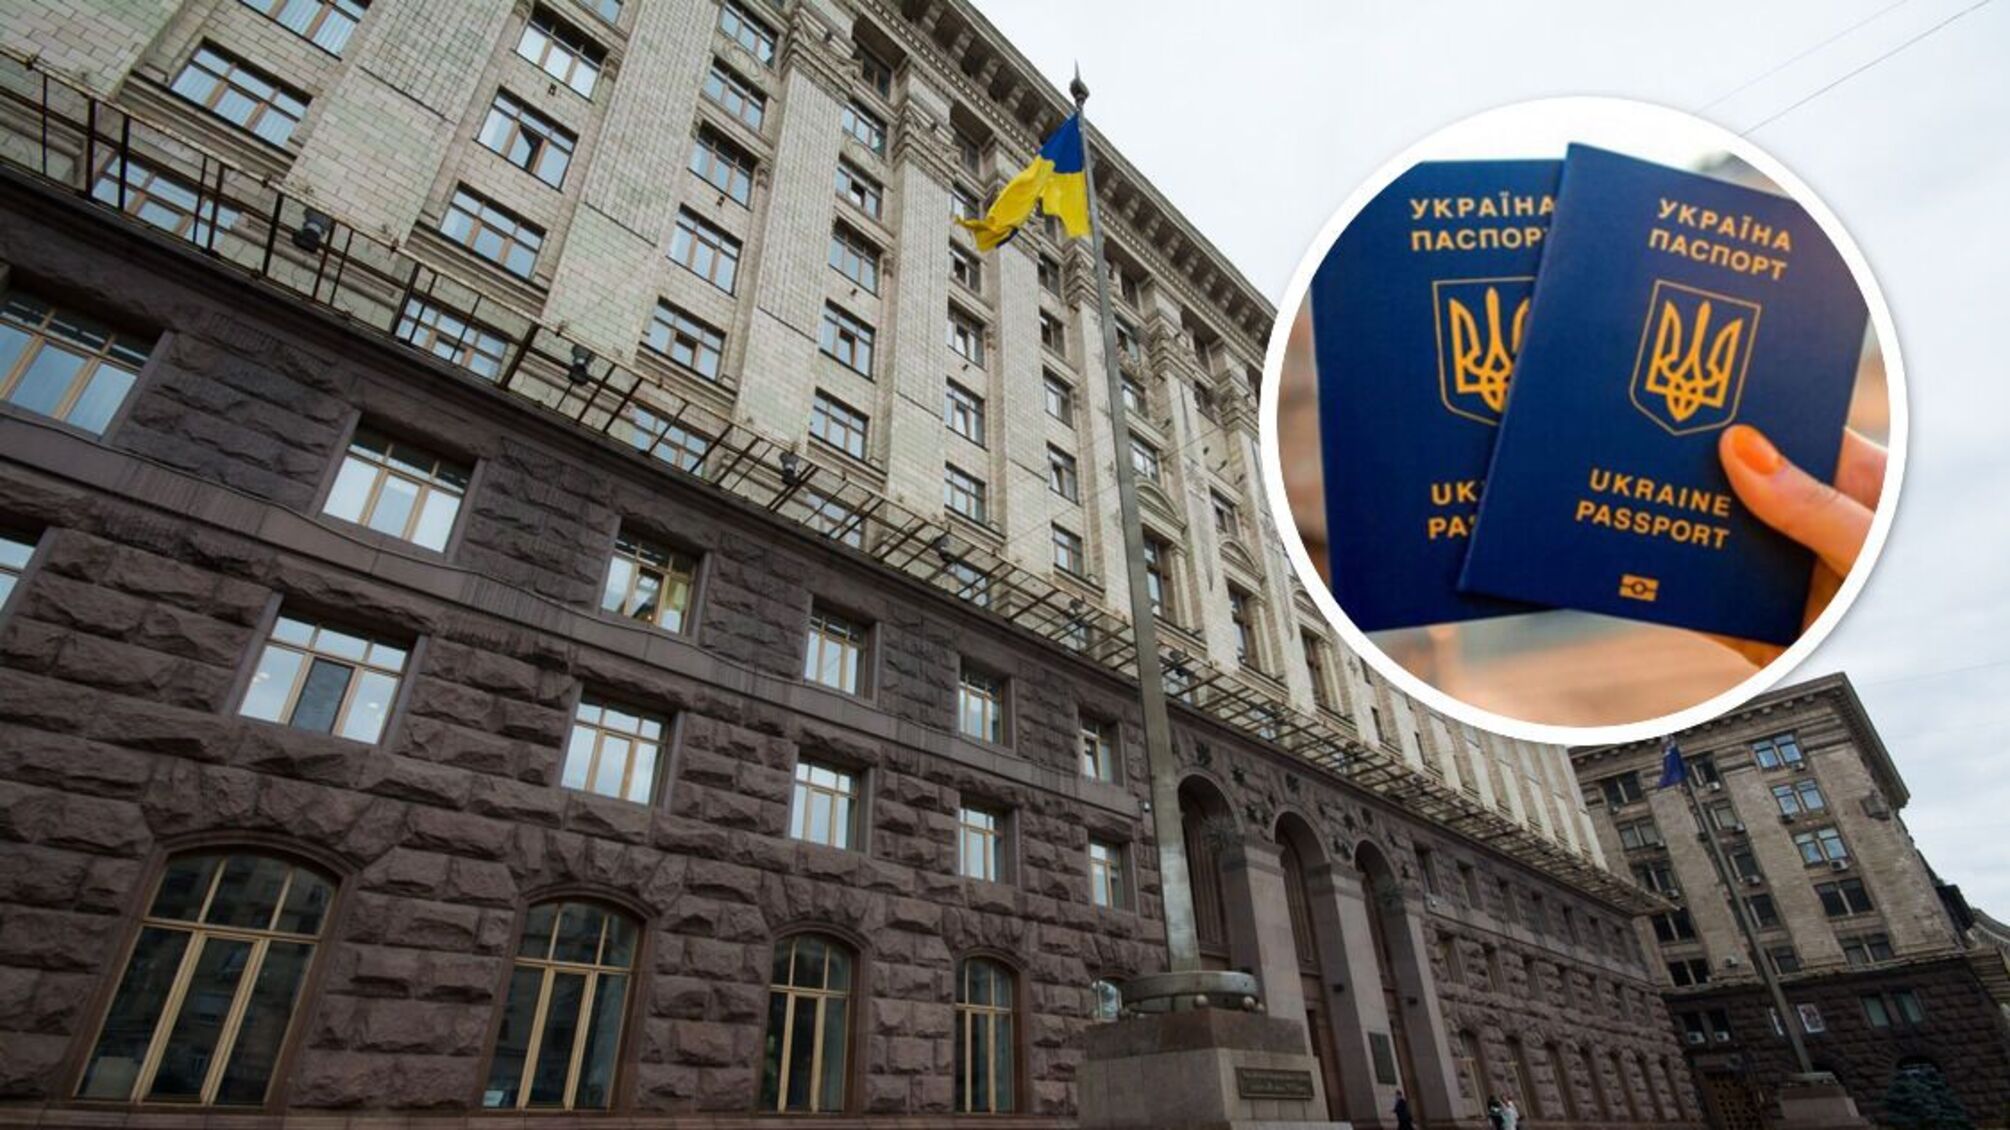 'Батальйон Київрада': прикордонники відмовились назвати імена депутатів, які виїхали за кордон